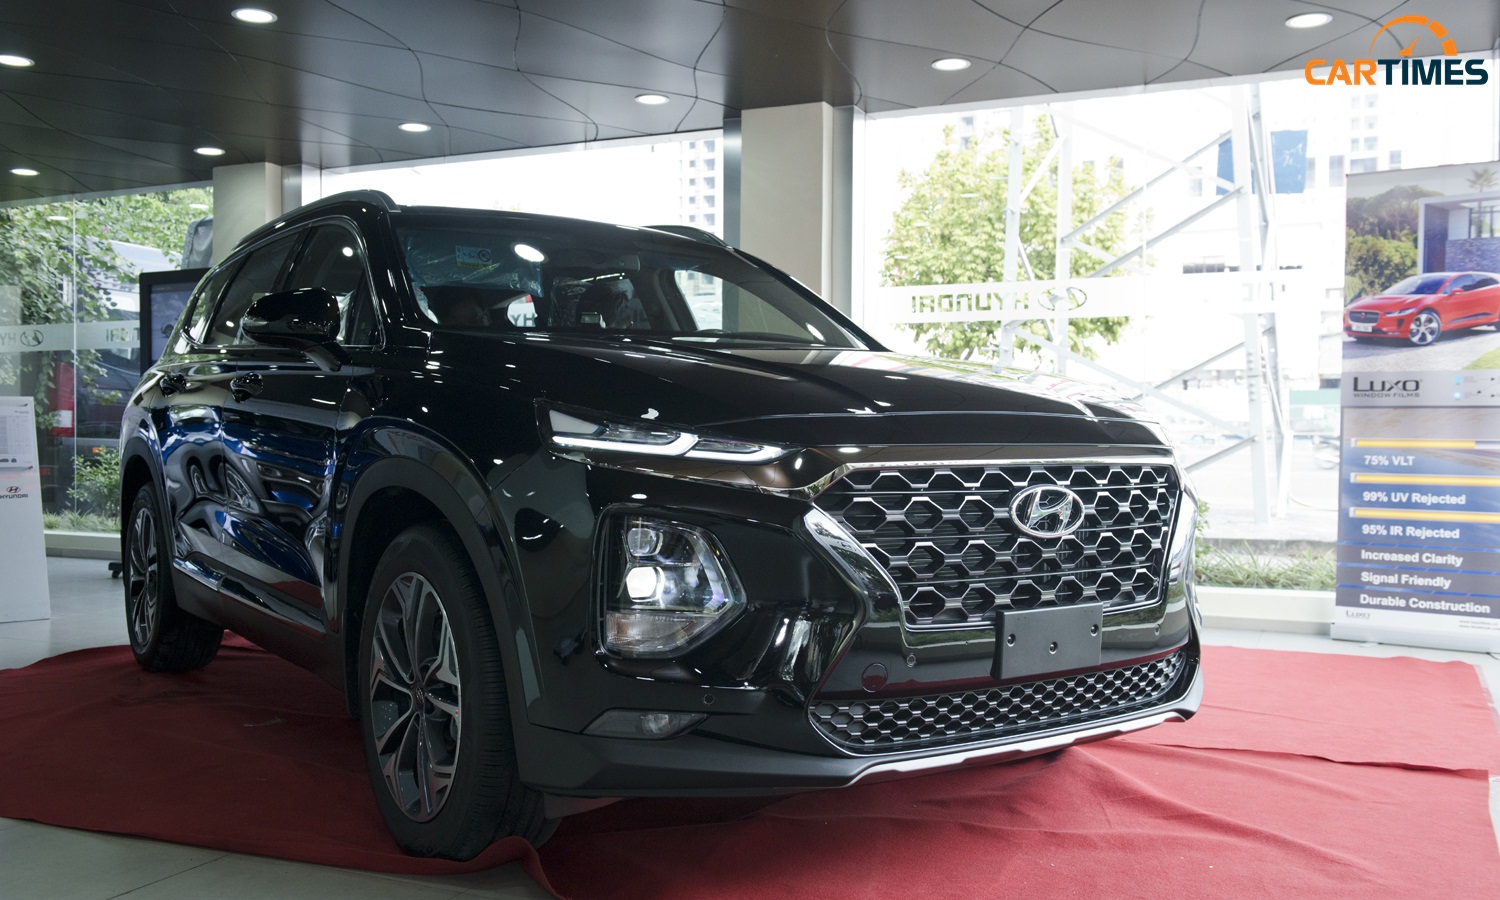 Cận cảnh xe Hyundai Santa Fe 2019 phiên bản lắp ráp trưng bày tại đại lý